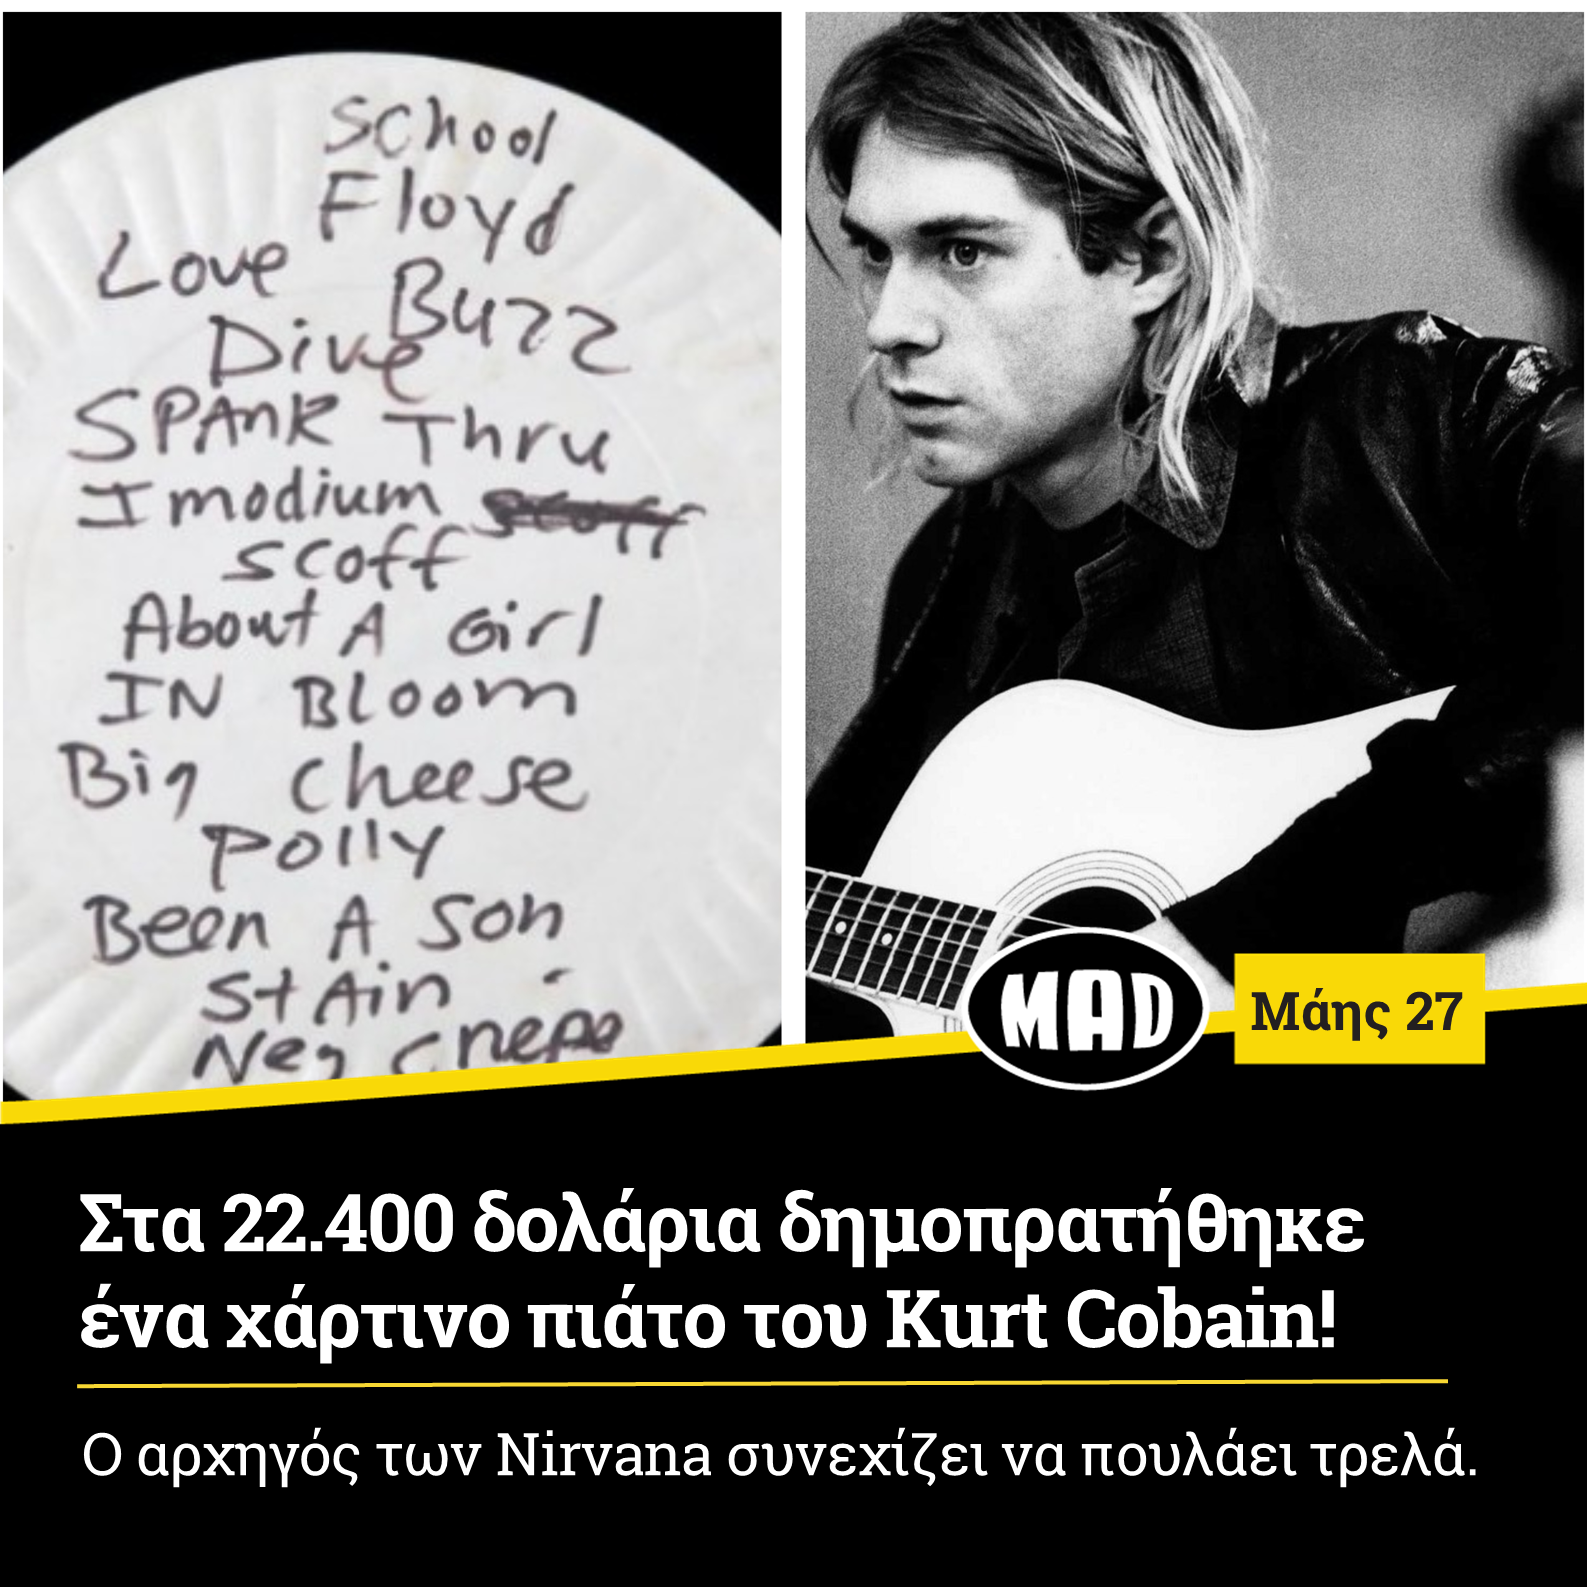 Στα 22.400 δολάρια δημοπρατήθηκε ένα χάρτινο πιάτο του Kurt Cobain!